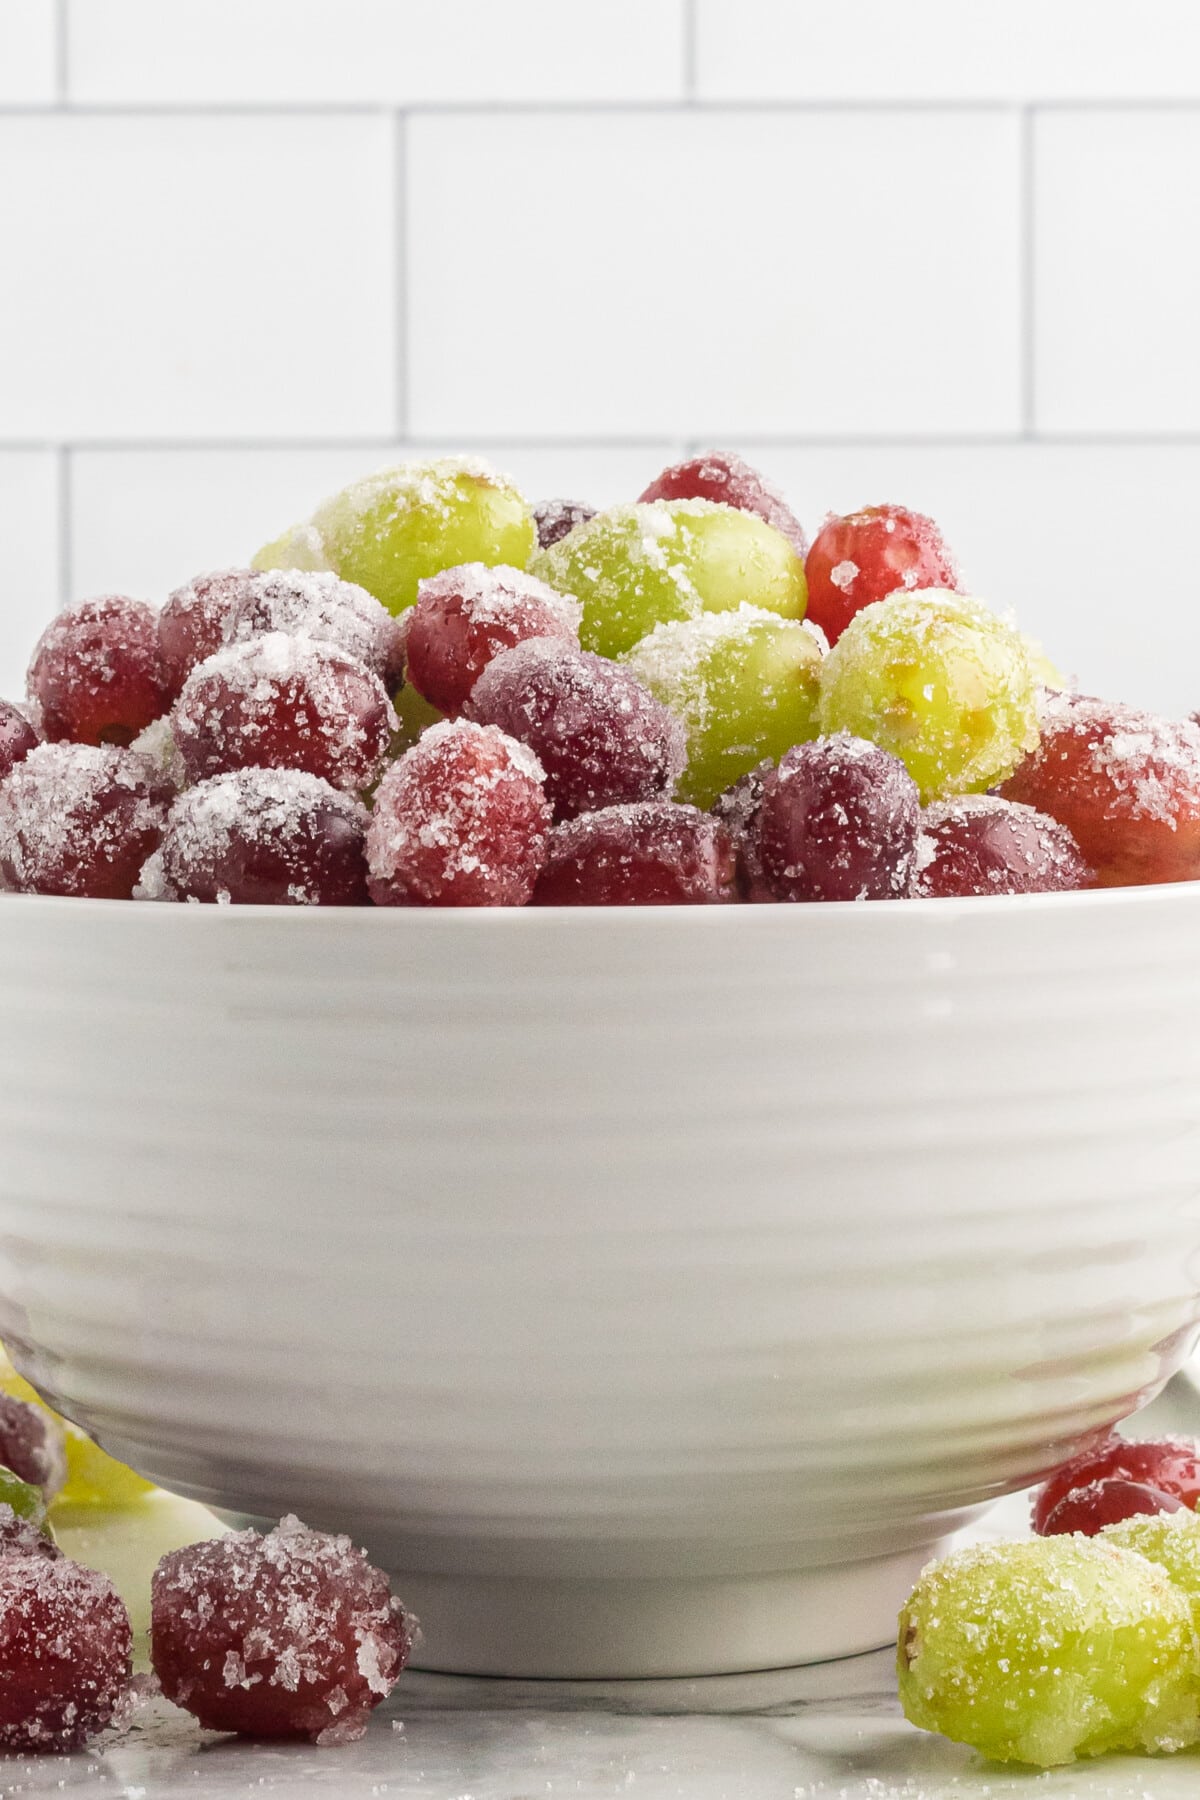 Prosecco Grapes in a bowl